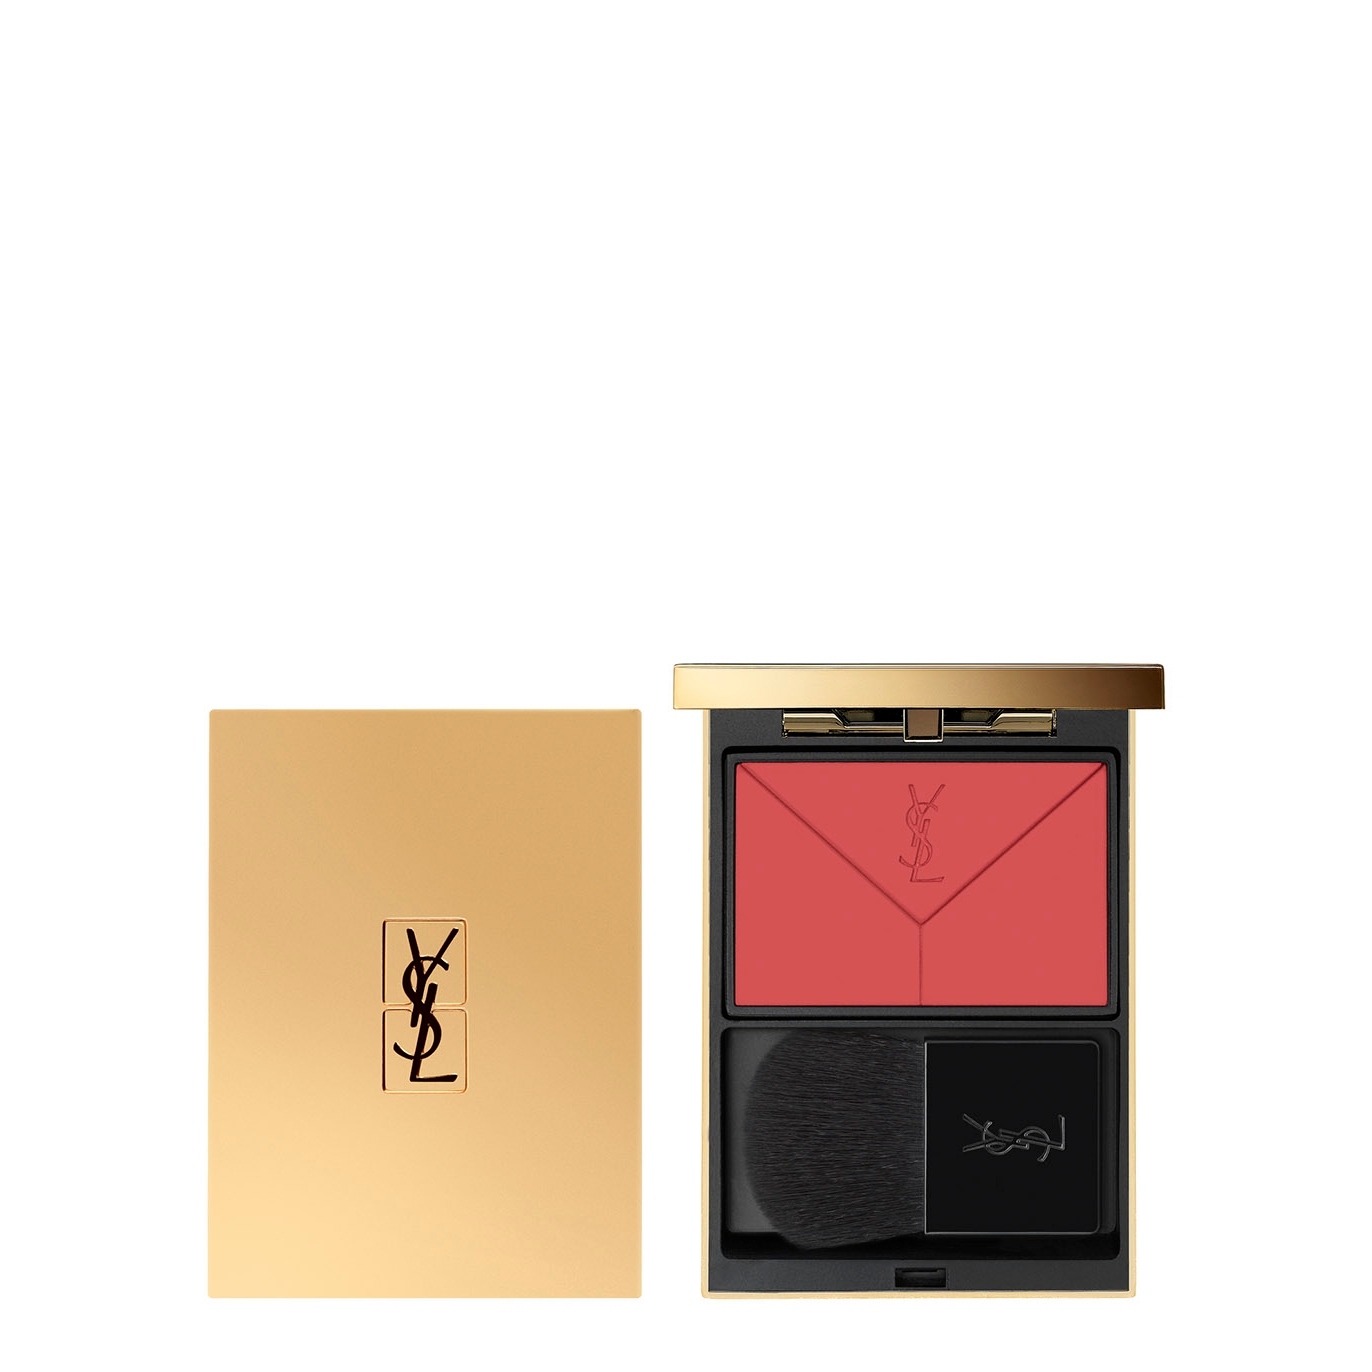 Yves Saint Laurent Couture Blush - Colour 01